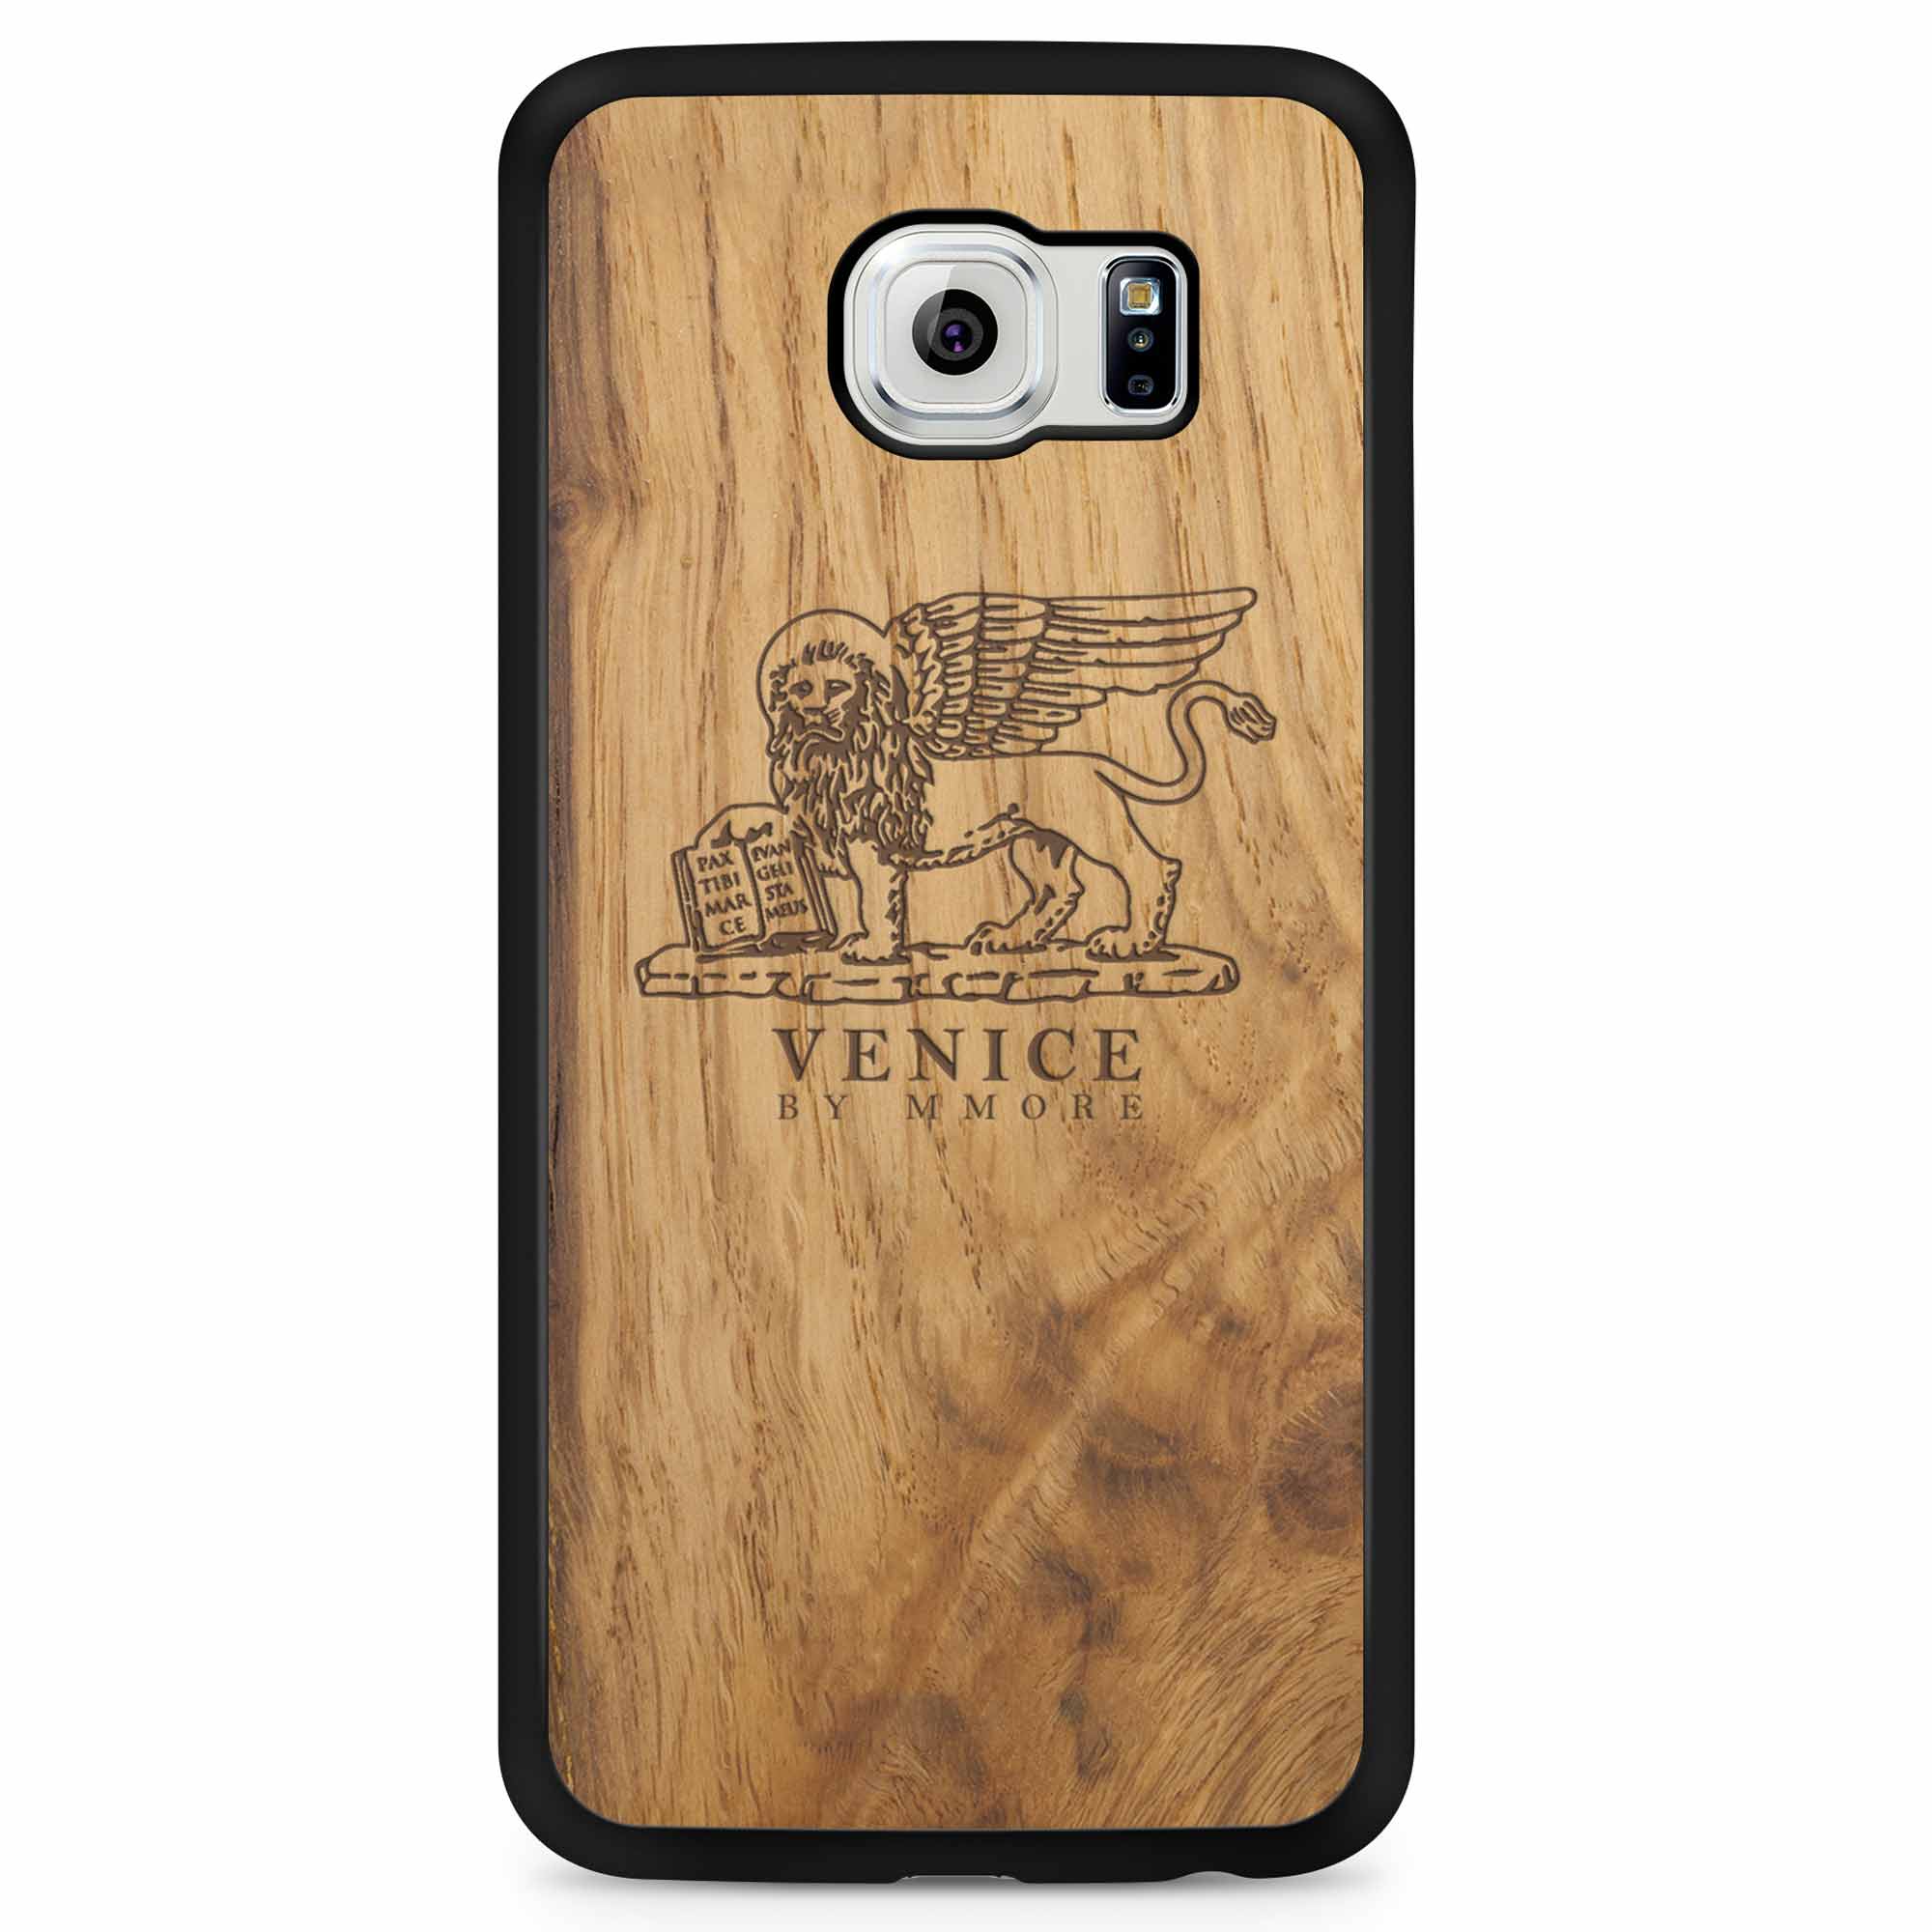 Custodia in legno antico per Samsung S6 con leone di Venezia